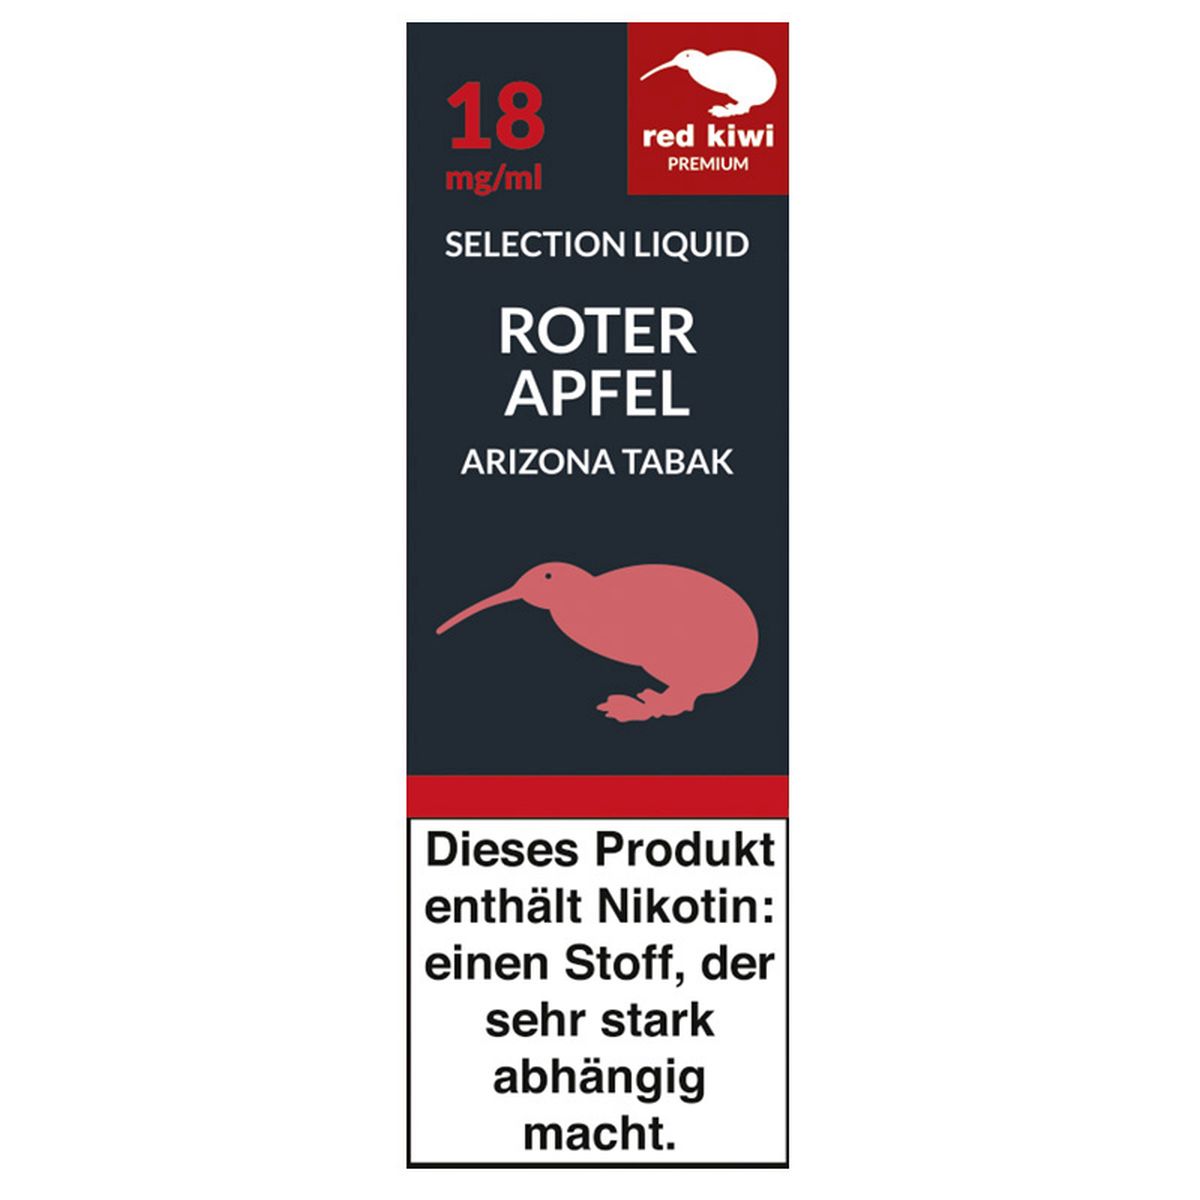 Red Kiwi Red Kiwi eLiquid Selection Roter Apfel Arizona Tabak 18mg Nikotin bei www.Tabakring.de kaufen